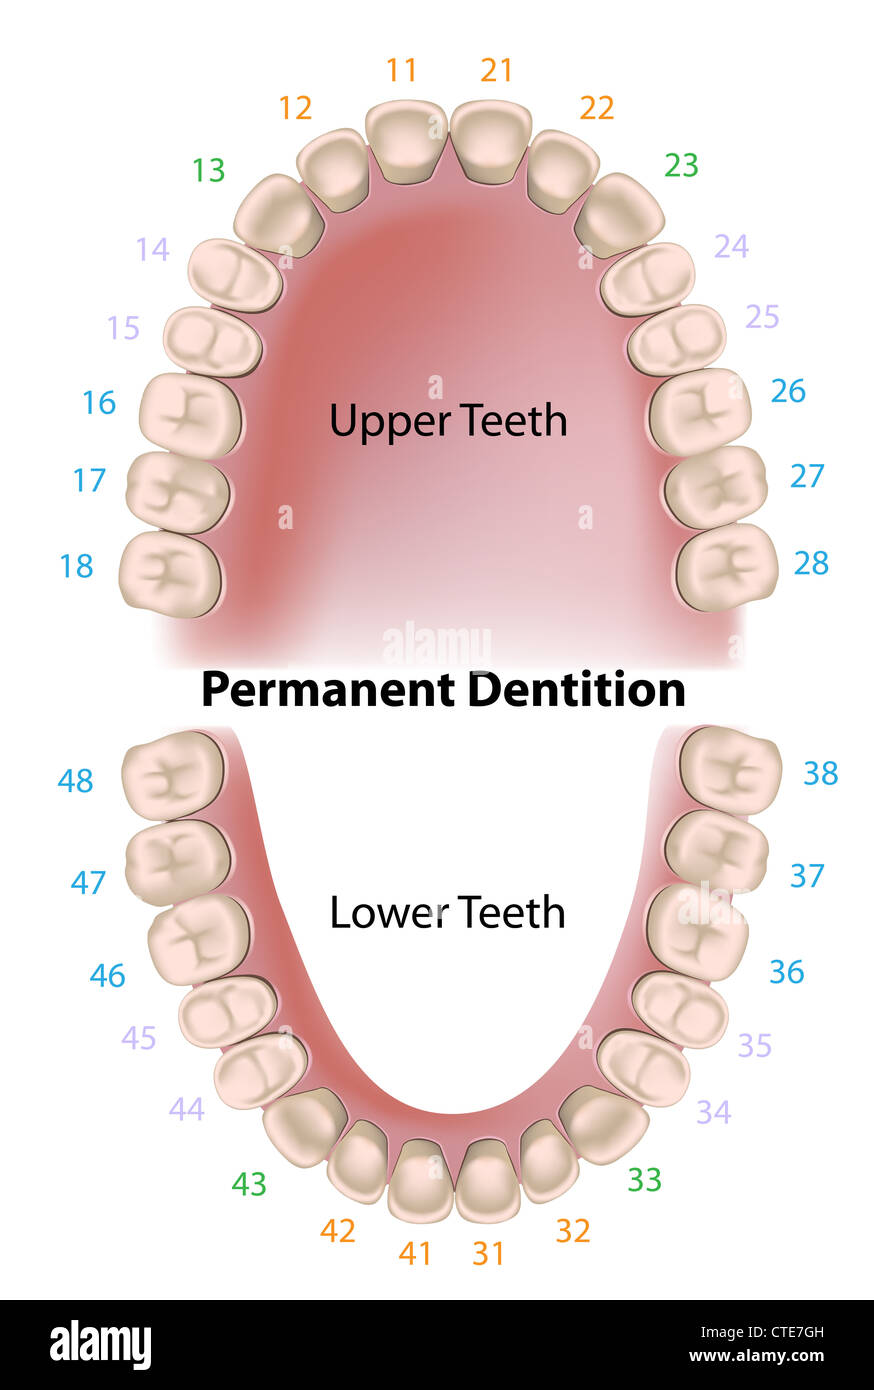 Dental Notation Chart